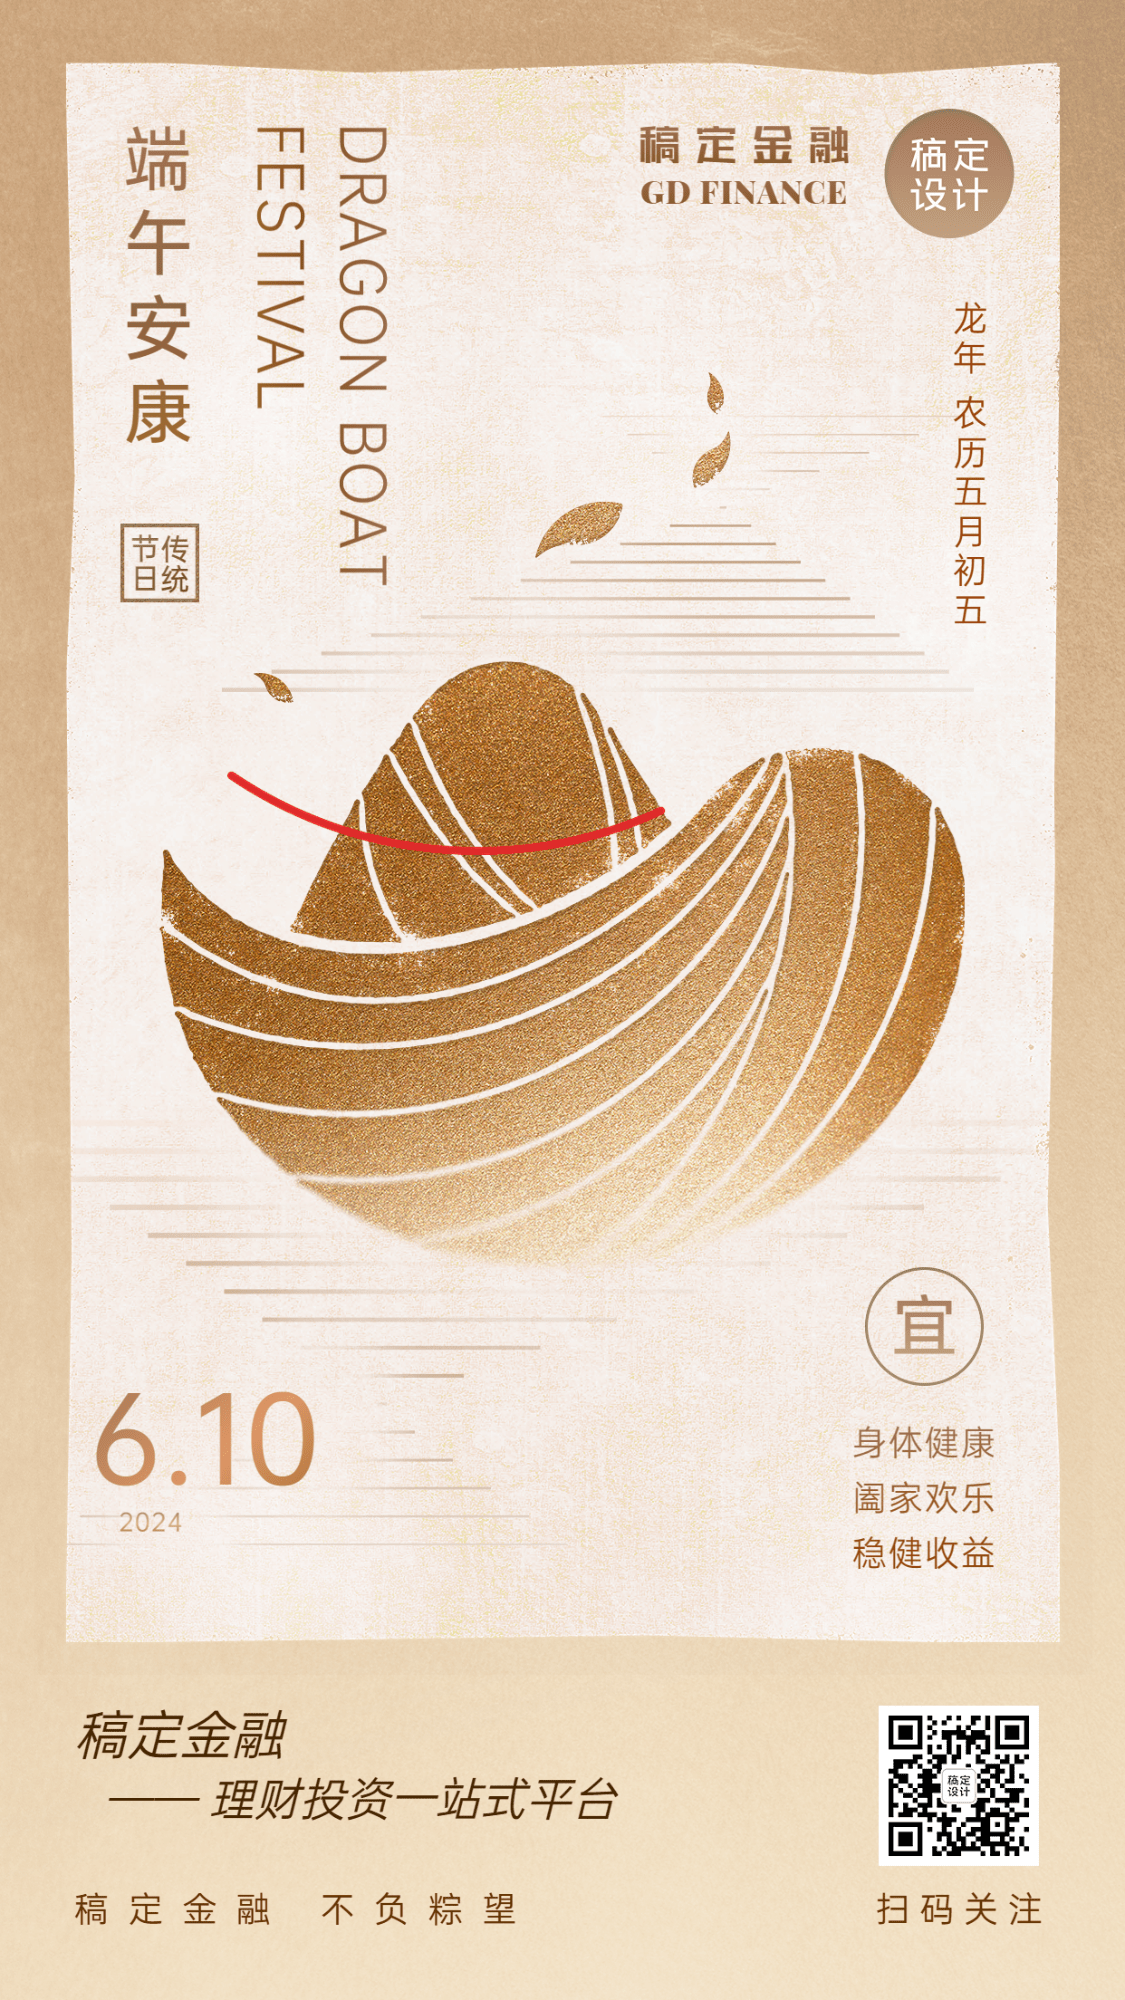 端午节金融保险节日祝福创意中国风手机海报